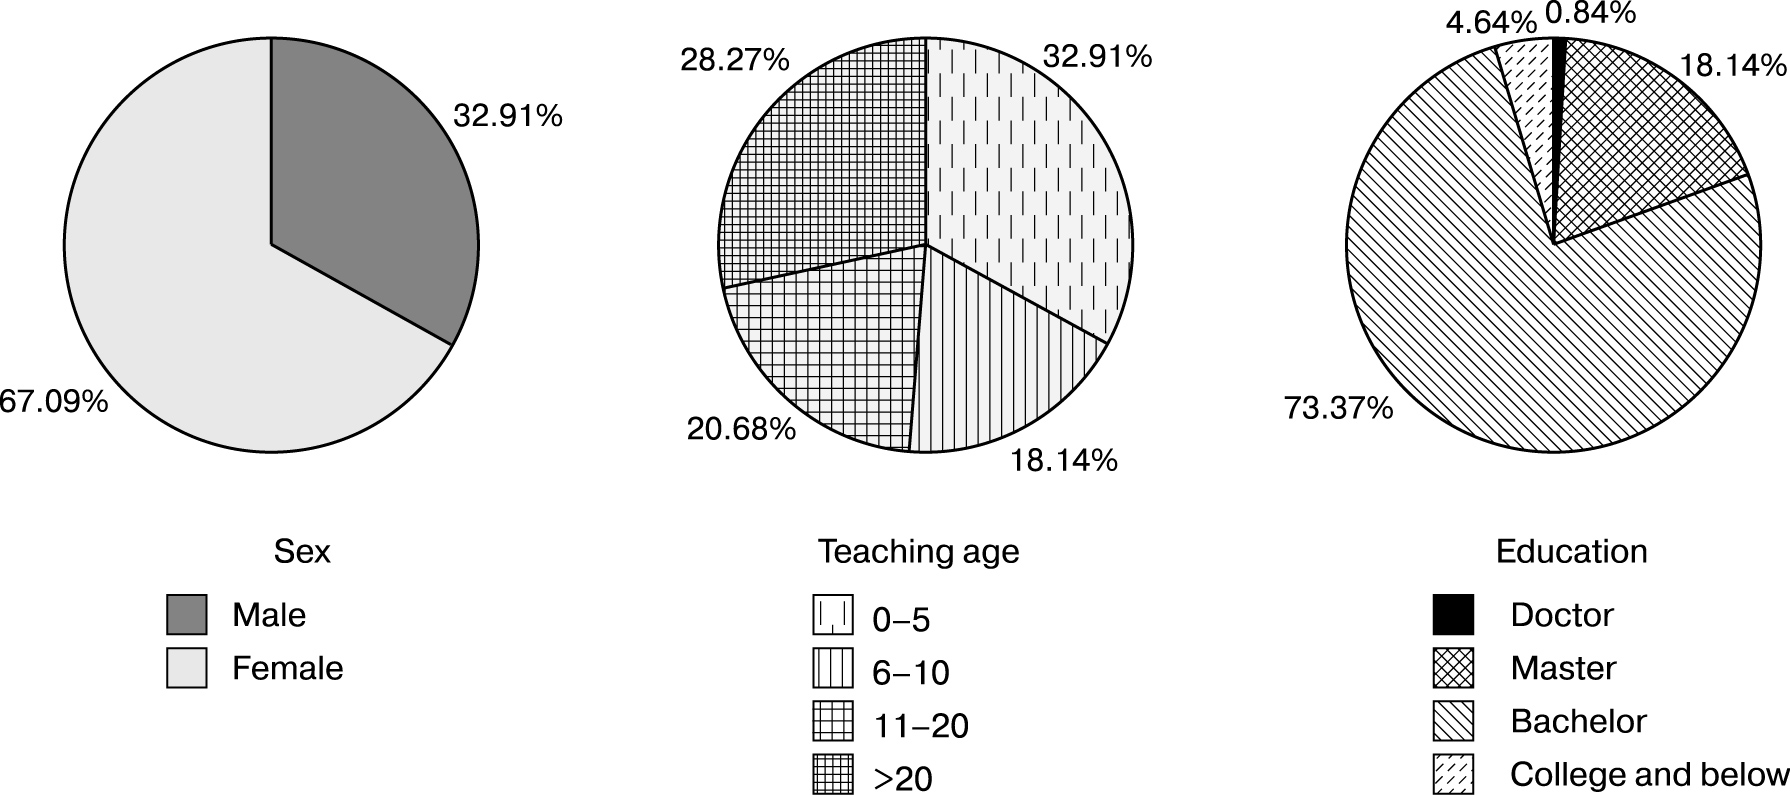 Information on respondents (China): sex, age, education, regions of residence. Regions:
       Anhui (2.53%), Beijing (3.38%), Chongqing (2.95%), Fujian (3.38%), Gansu (1.27%), Guangdong
       (3.8%), Guangxi (2.53%), Guizhou (4.22%), Hainan (0.84%), Hebei (5.91%), Heilongjiang
       (1.27%), Henan (11.81%), Hubei (2.95%), Hunan (1.69%), Jiangsu (3.8%), Jiangxi (5.06%),
       Jiling (0.84%), Liaoning (1.27%), Inner Mongalia (5.91%), Ningxia (0.42%), Shandong (6.33%),
       Shanghai (11.81%), Shanxi (2.11%), Shaanxi (2.11%), Sichuan (7.17%), Tianjin (0.42%),
       SinKiang (1.27%), Yunnan (1.27%), Zhejiang (1.69%)